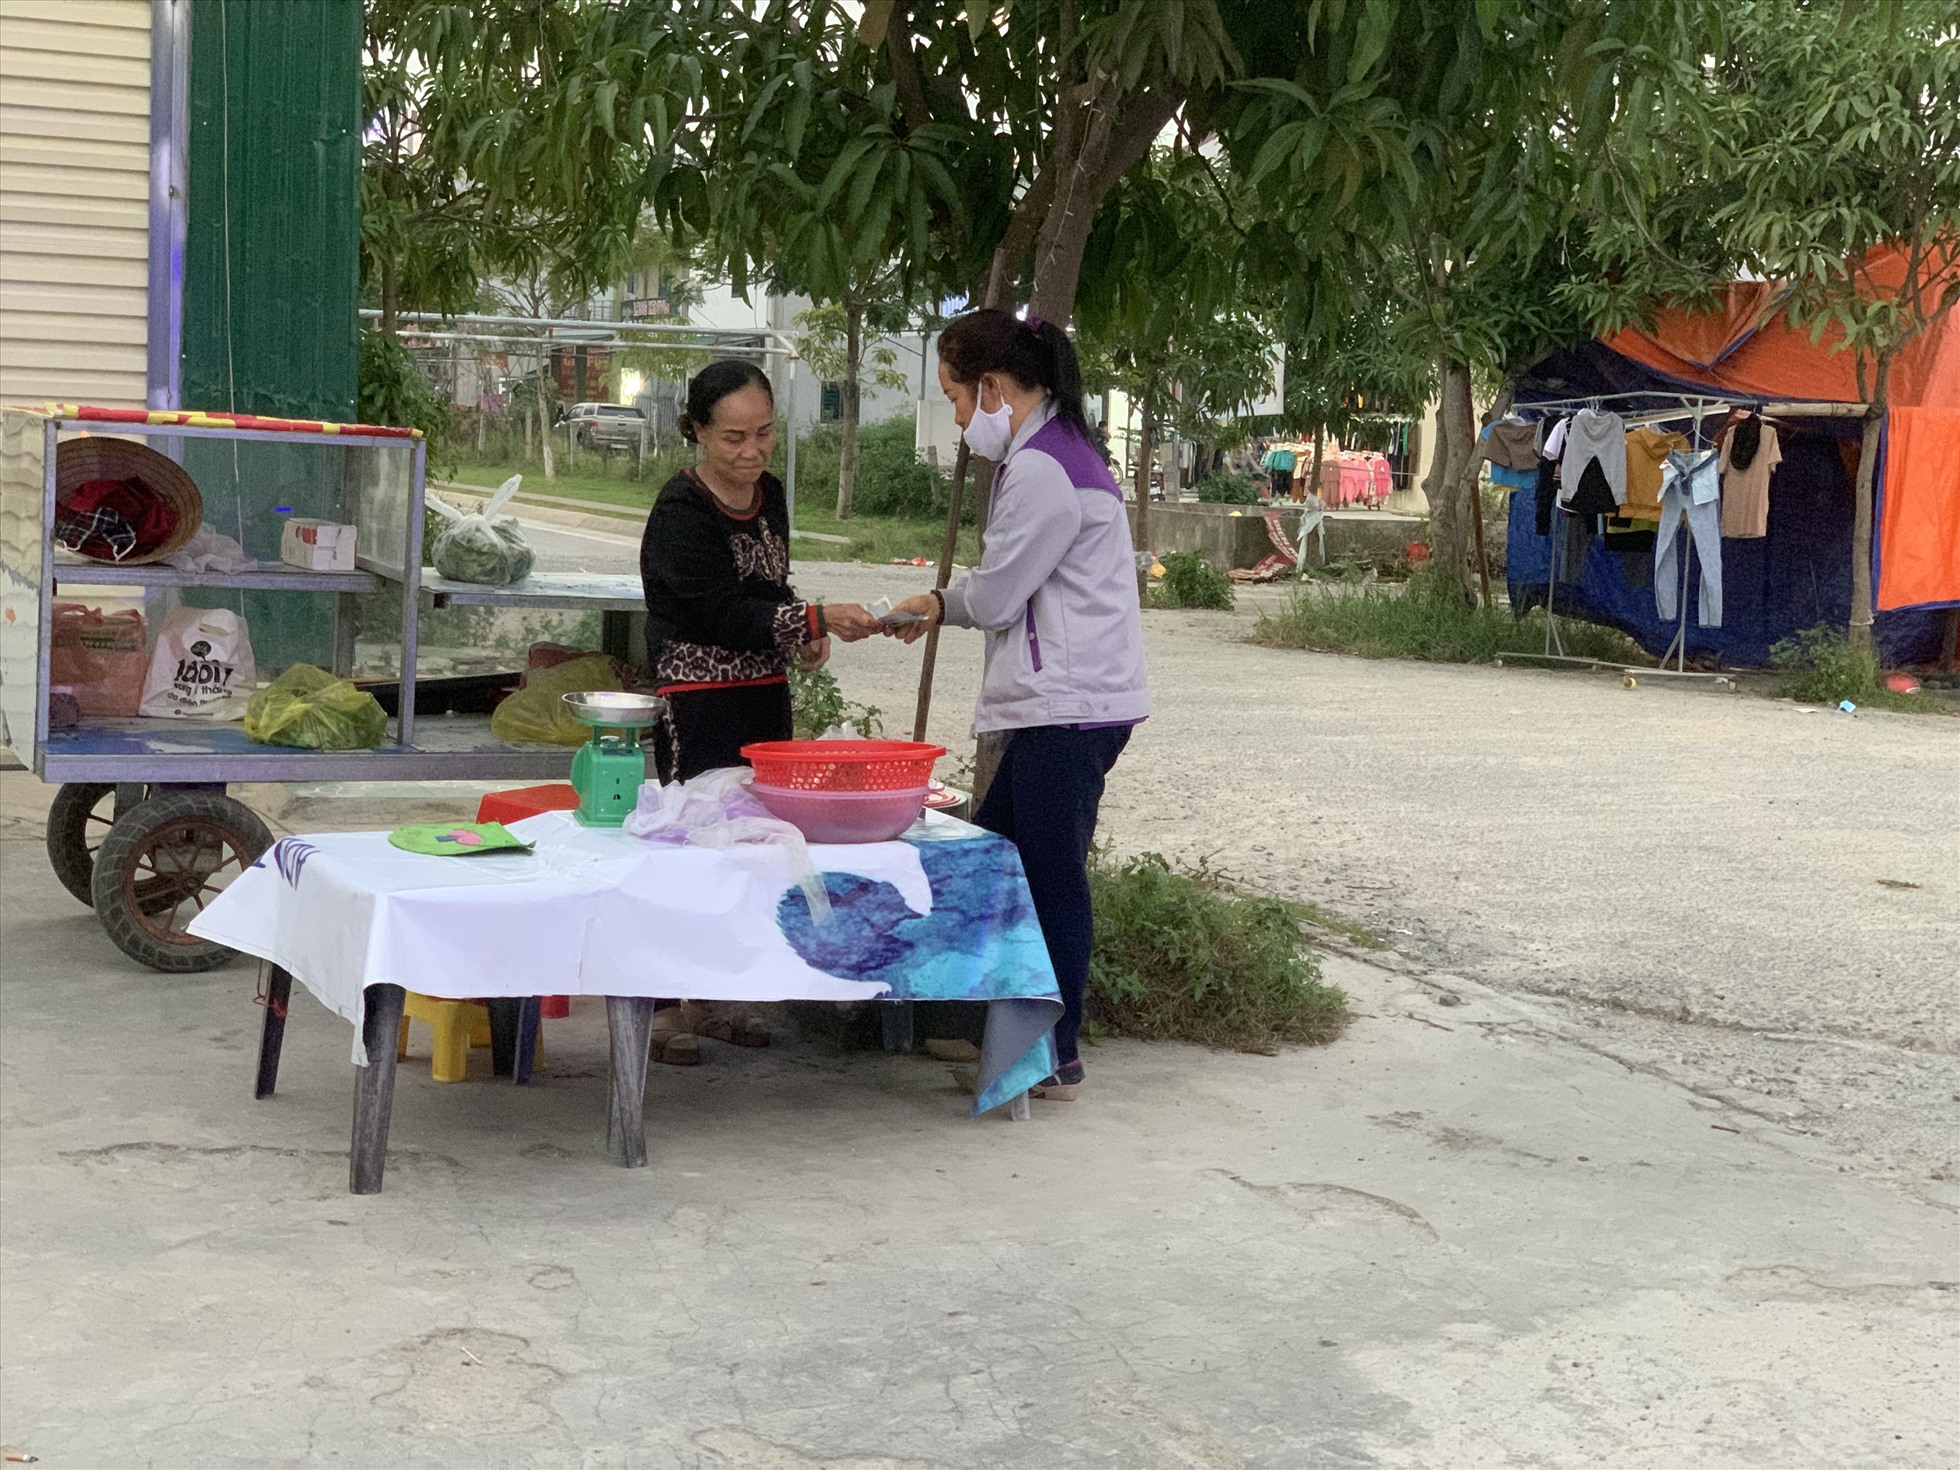 Tăng ca về muộn,chị Hà Thị Phượng ghé hàng rong gần xóm trọ để chuẩn bị bữa tối. Ảnh: Quỳnh Trang.